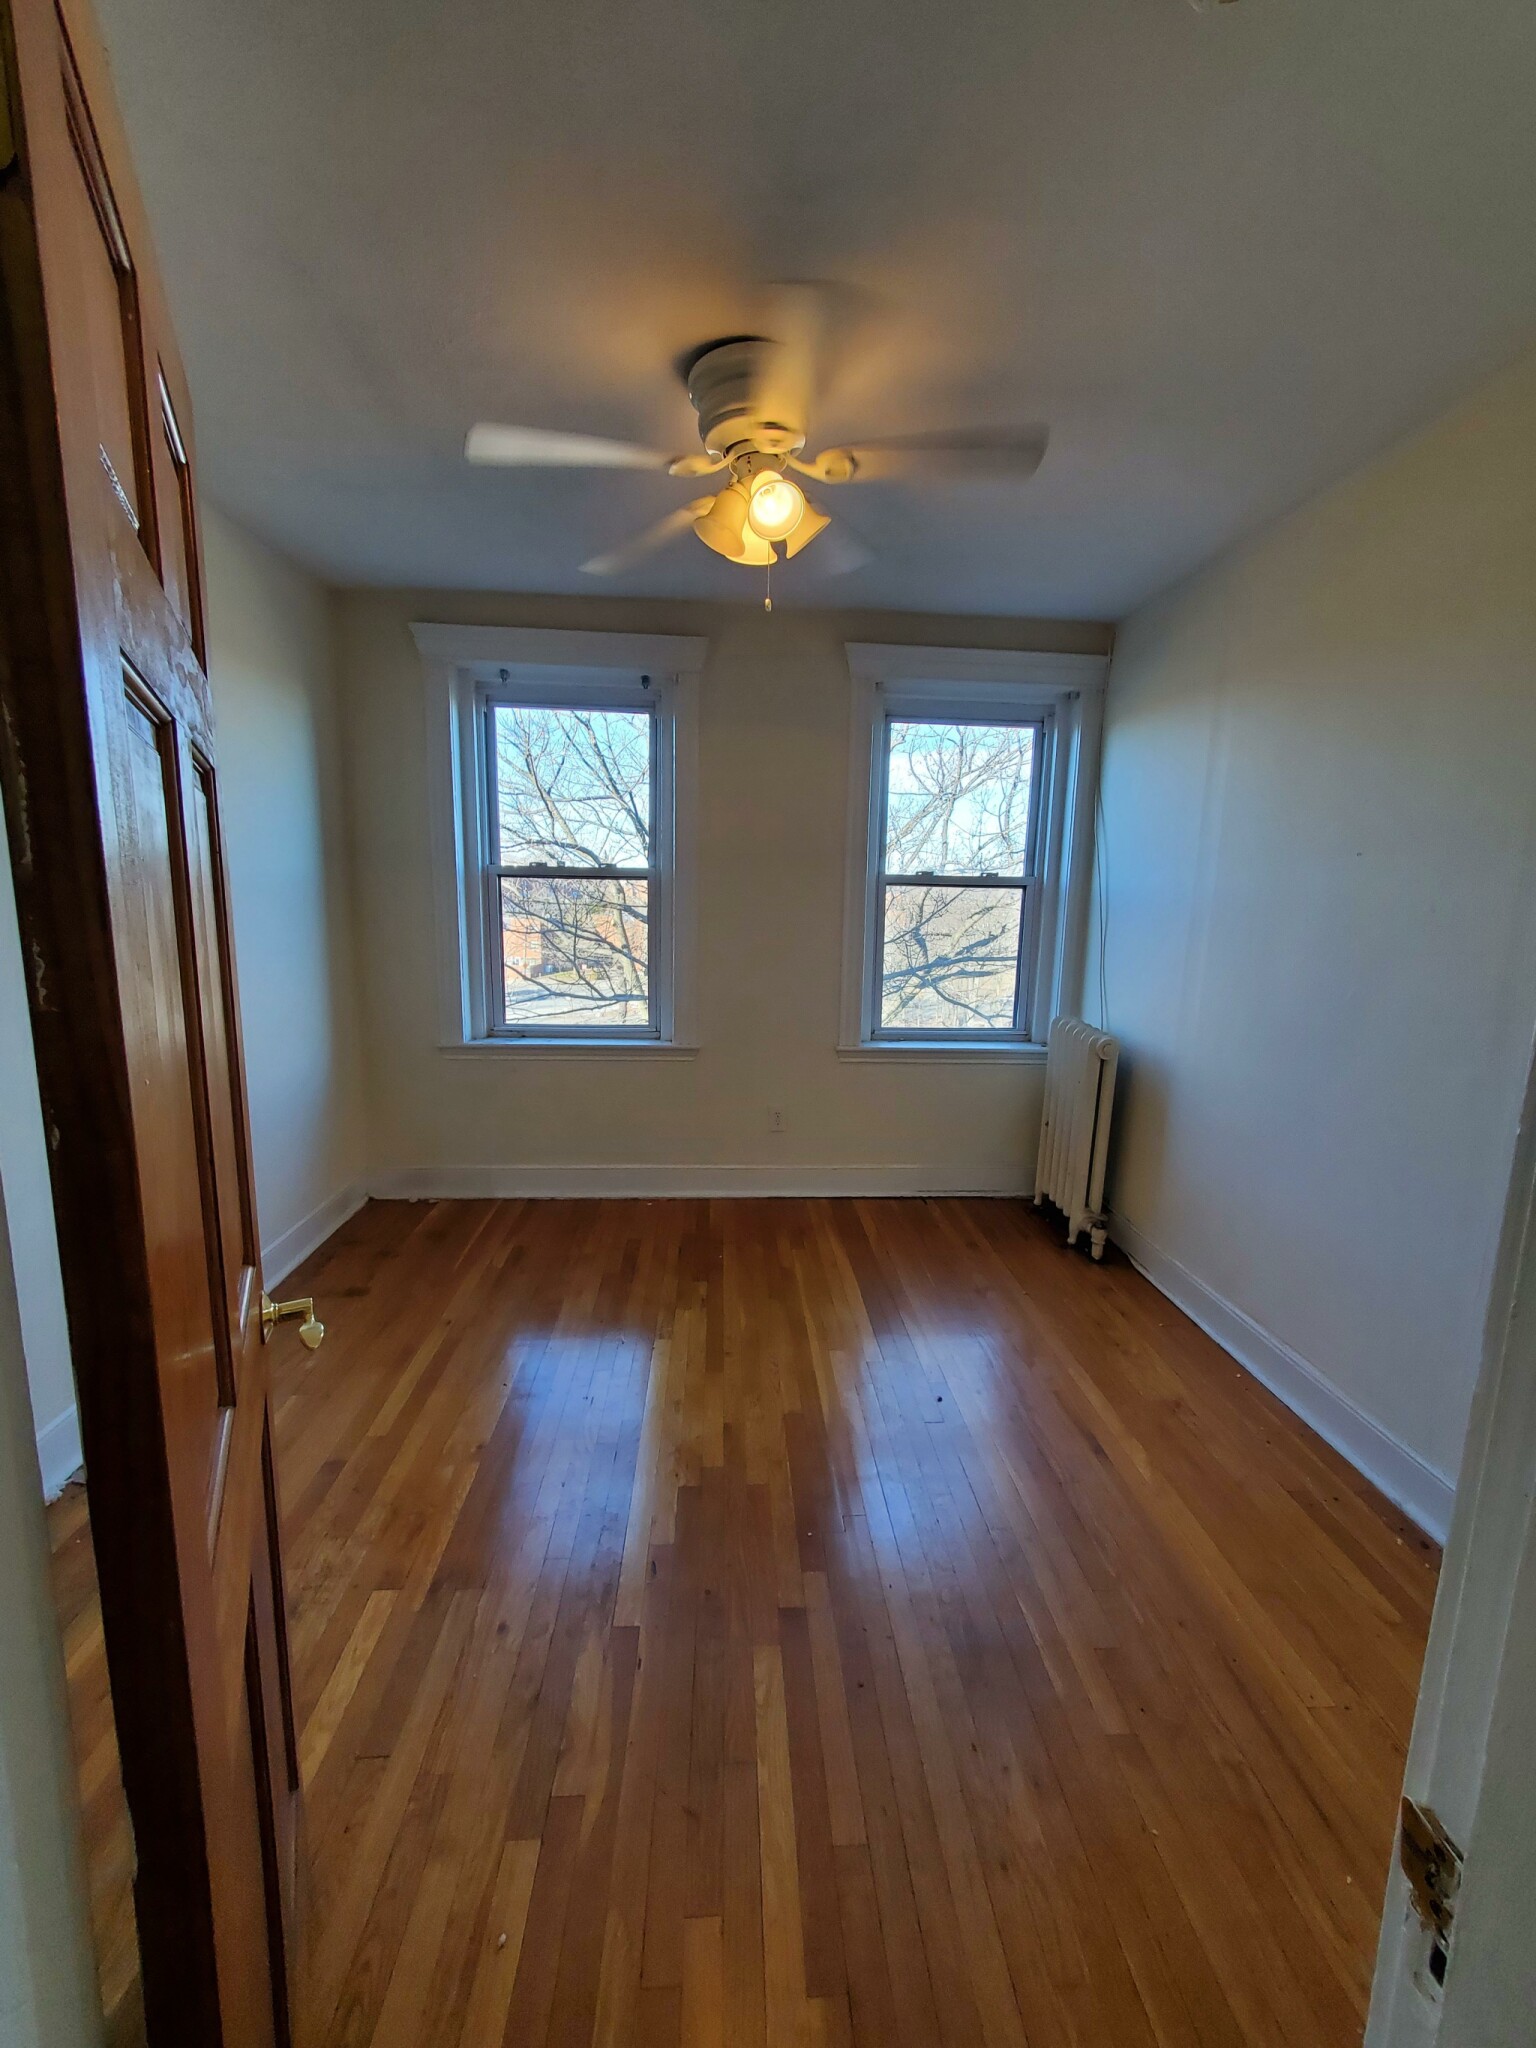 Photos of apartment on Riverway,Boston MA 02115